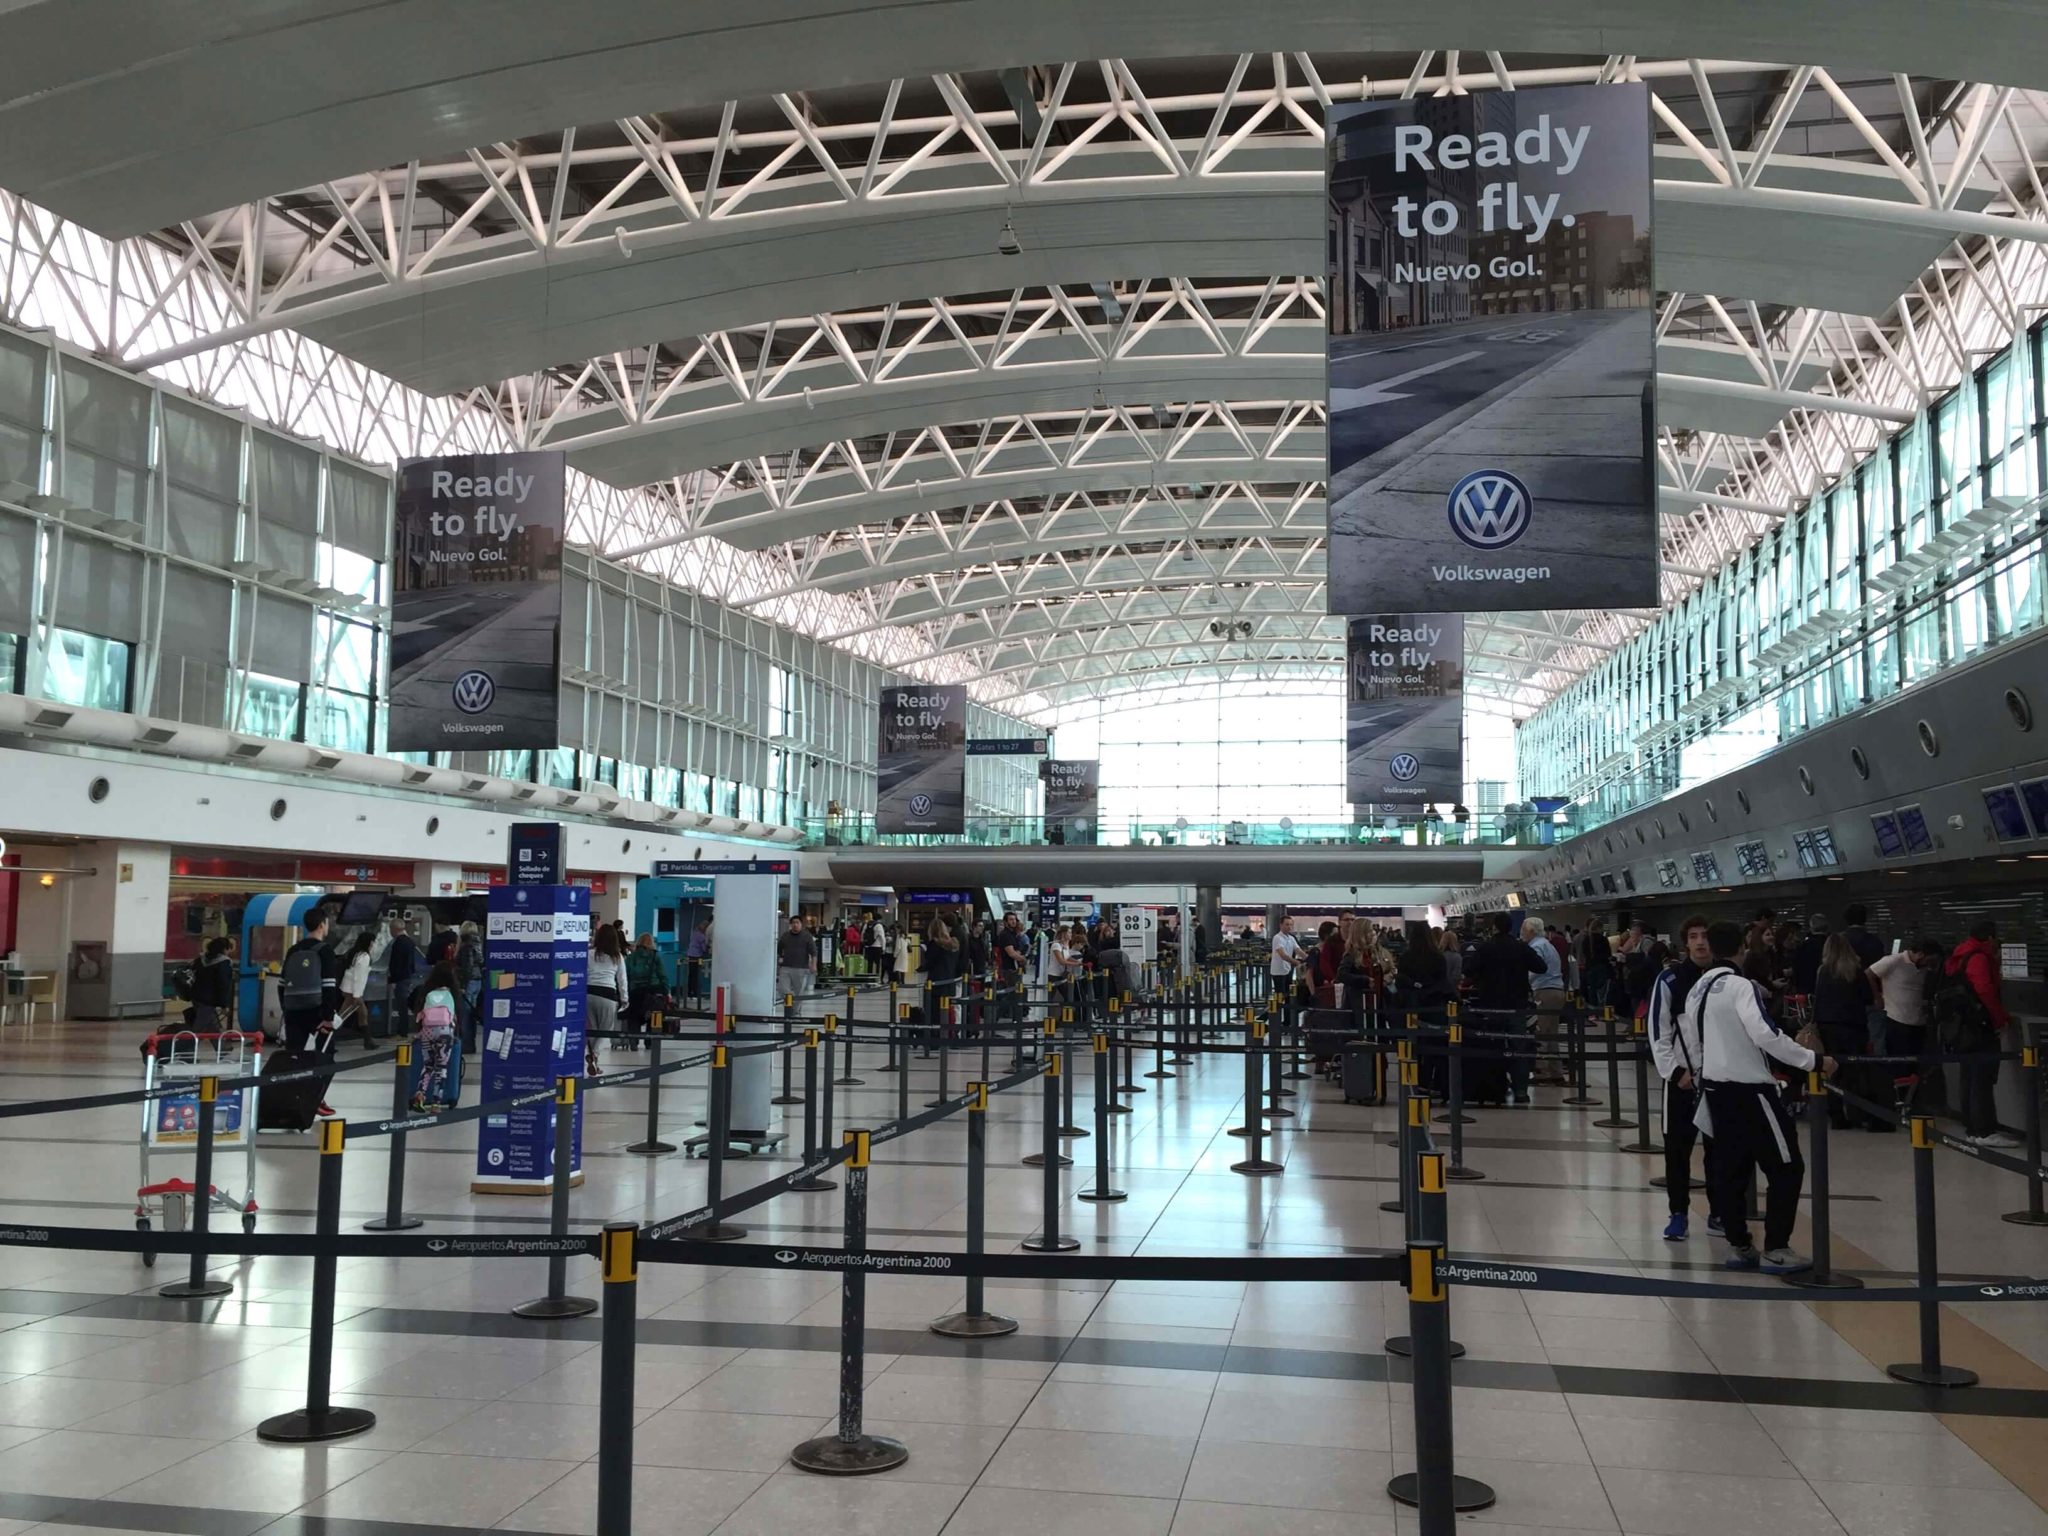 Reporte: Centurion Lounge American Express Aeropuerto de Ezeiza, Buenos